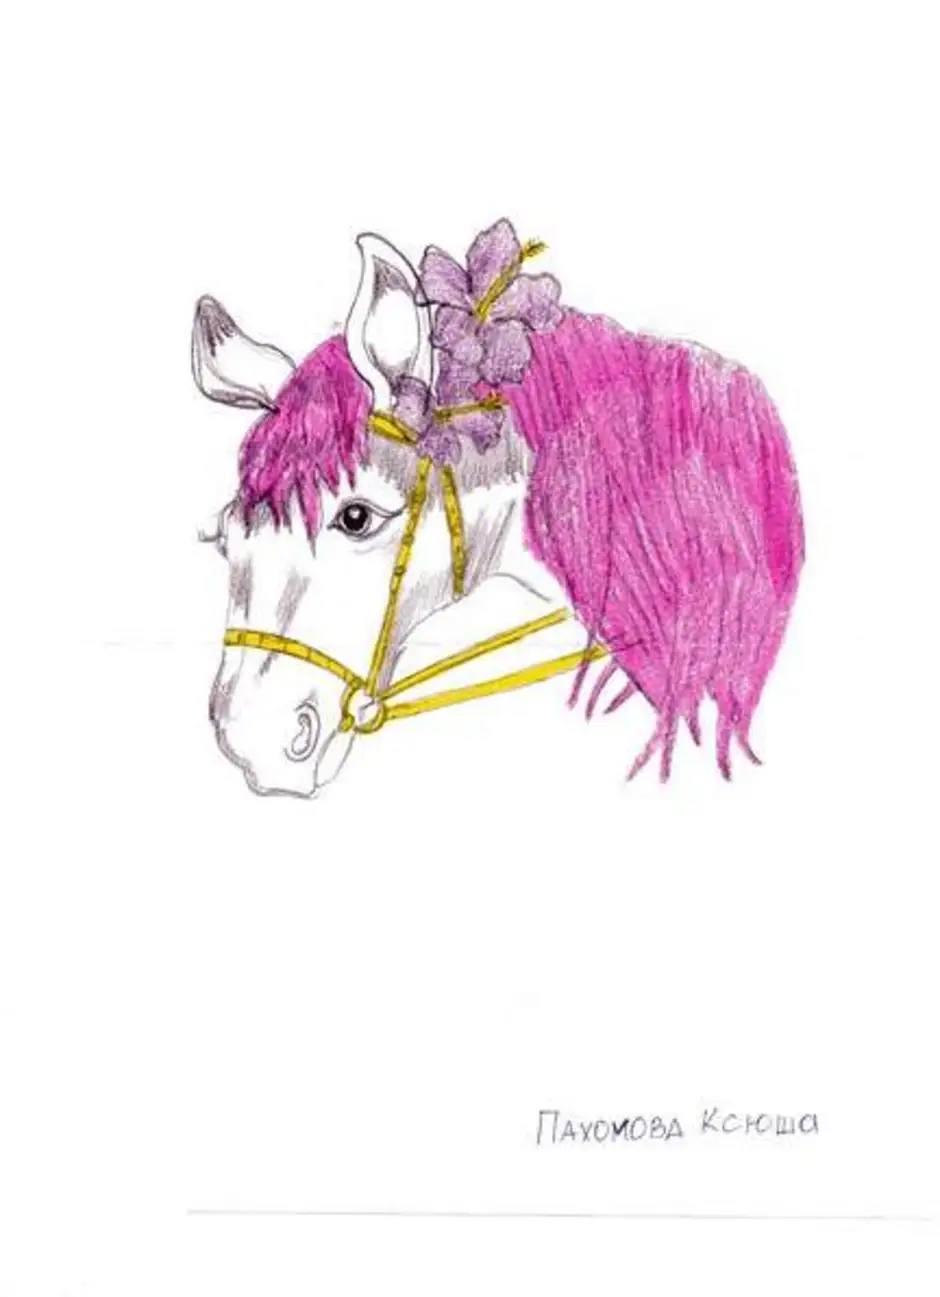 Васеня конь с розовой гривой. Конь с розовой гривой иллюстрации. Конь с розовой гривой рисунок. Лошадь с розовой гривой рисунок. Конь с розовой гривой рисунок коня.